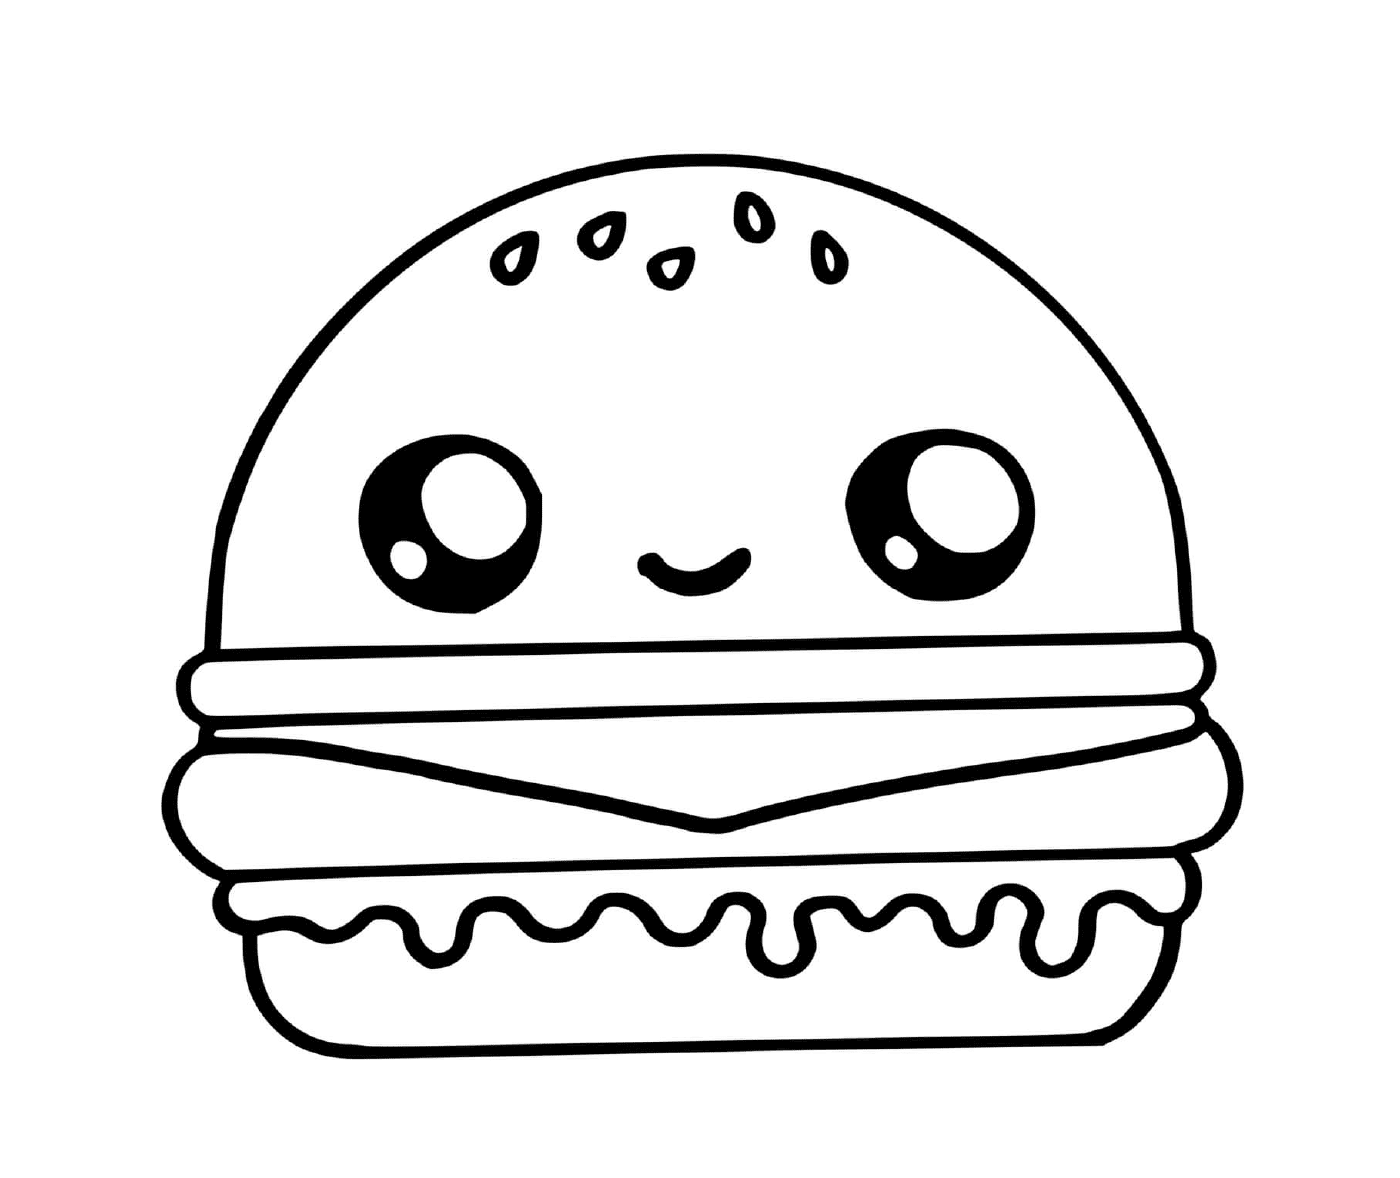  Un hamburger 